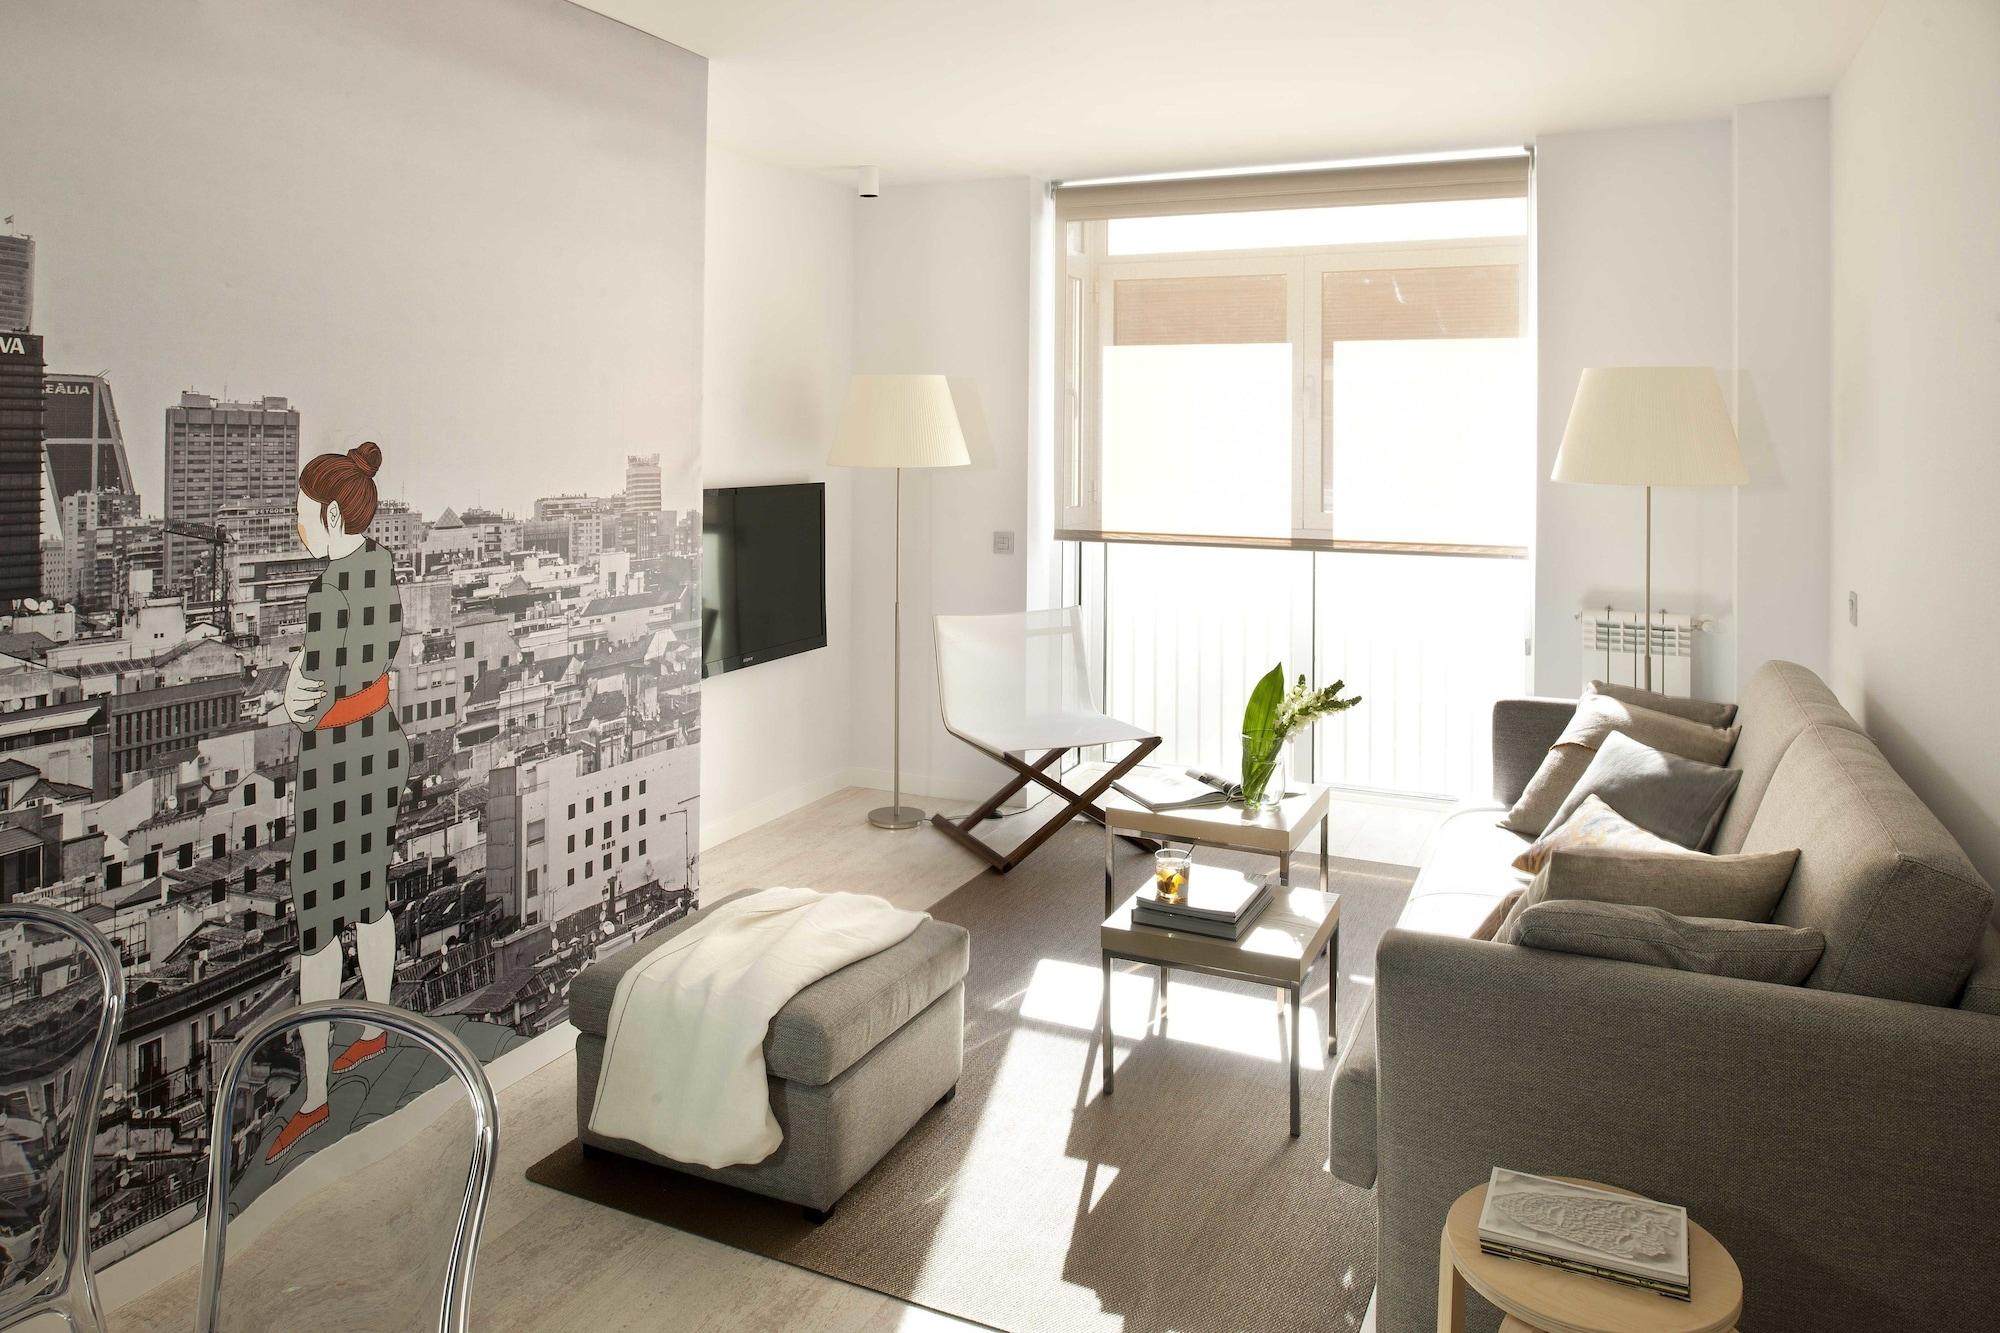 Eric Vokel Boutique Apartments - Atocha Suites Madri Exterior foto